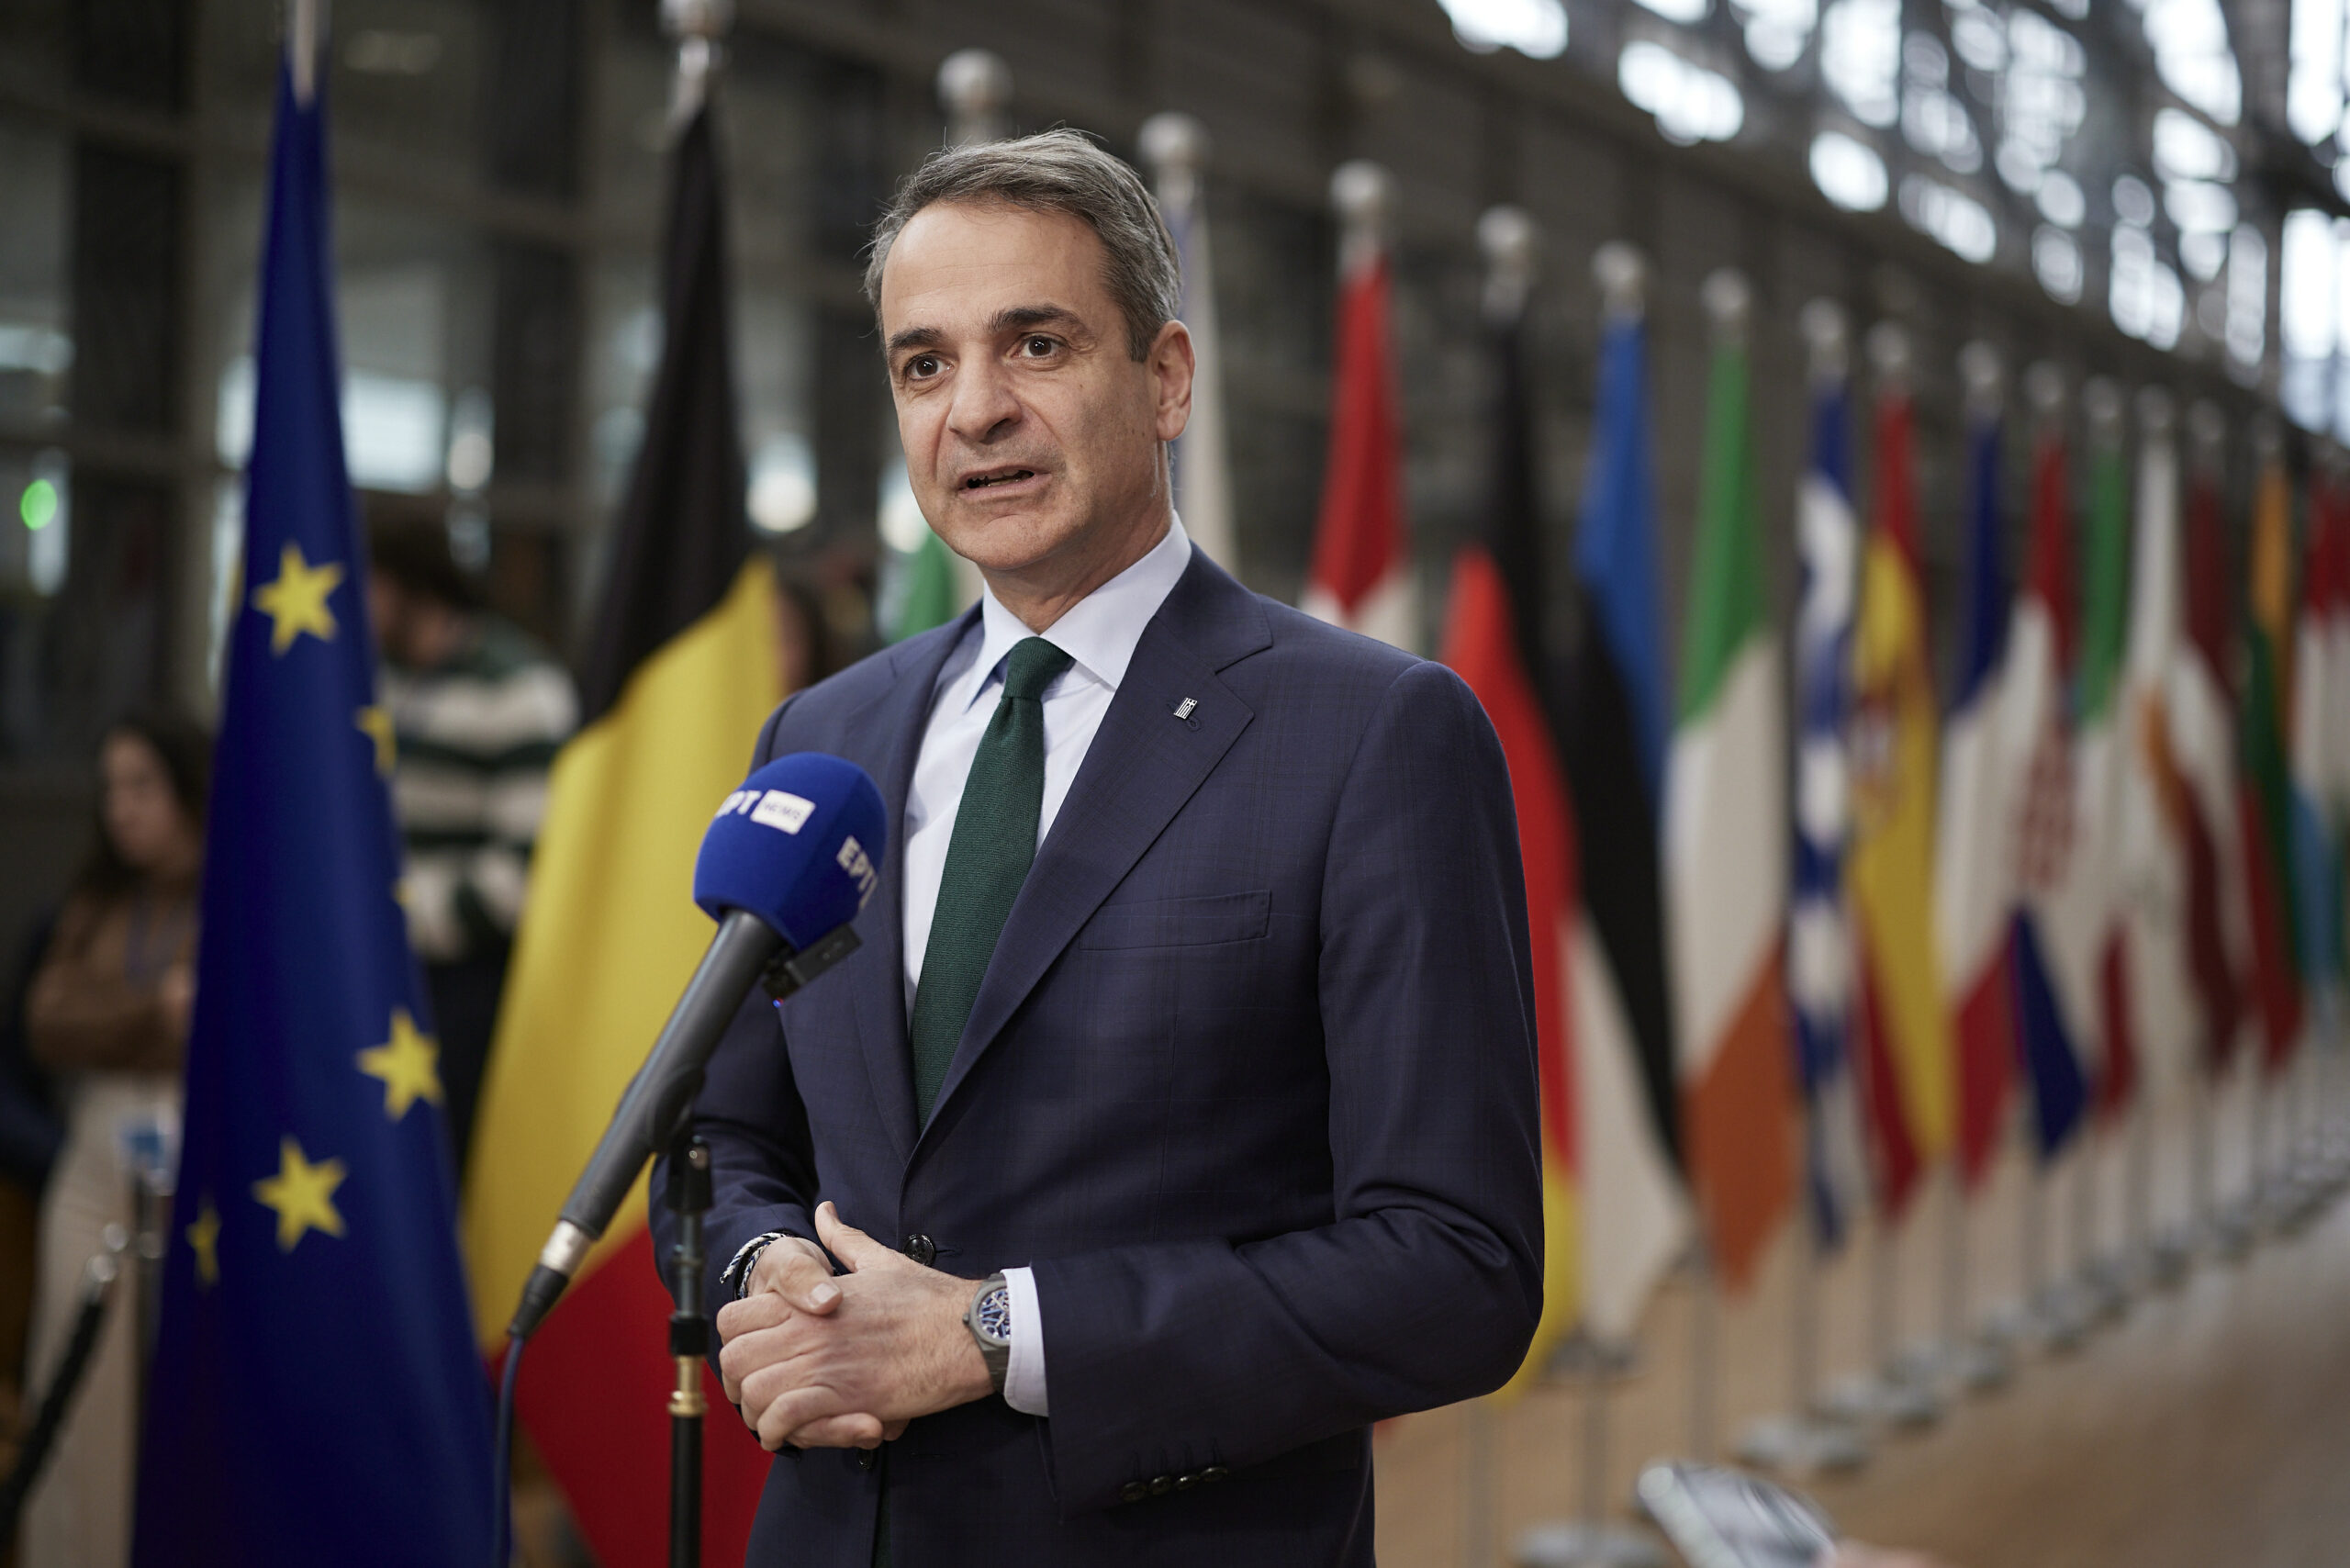 Μητσοτάκης: Το ΕΛΚ ως ο νικητής των ευρωεκλογών διεκδικεί την συνέχιση της προεδρίας της Φον Ντερ Λάιεν στην προεδρία της Ευρωπαϊκής Επιτροπής